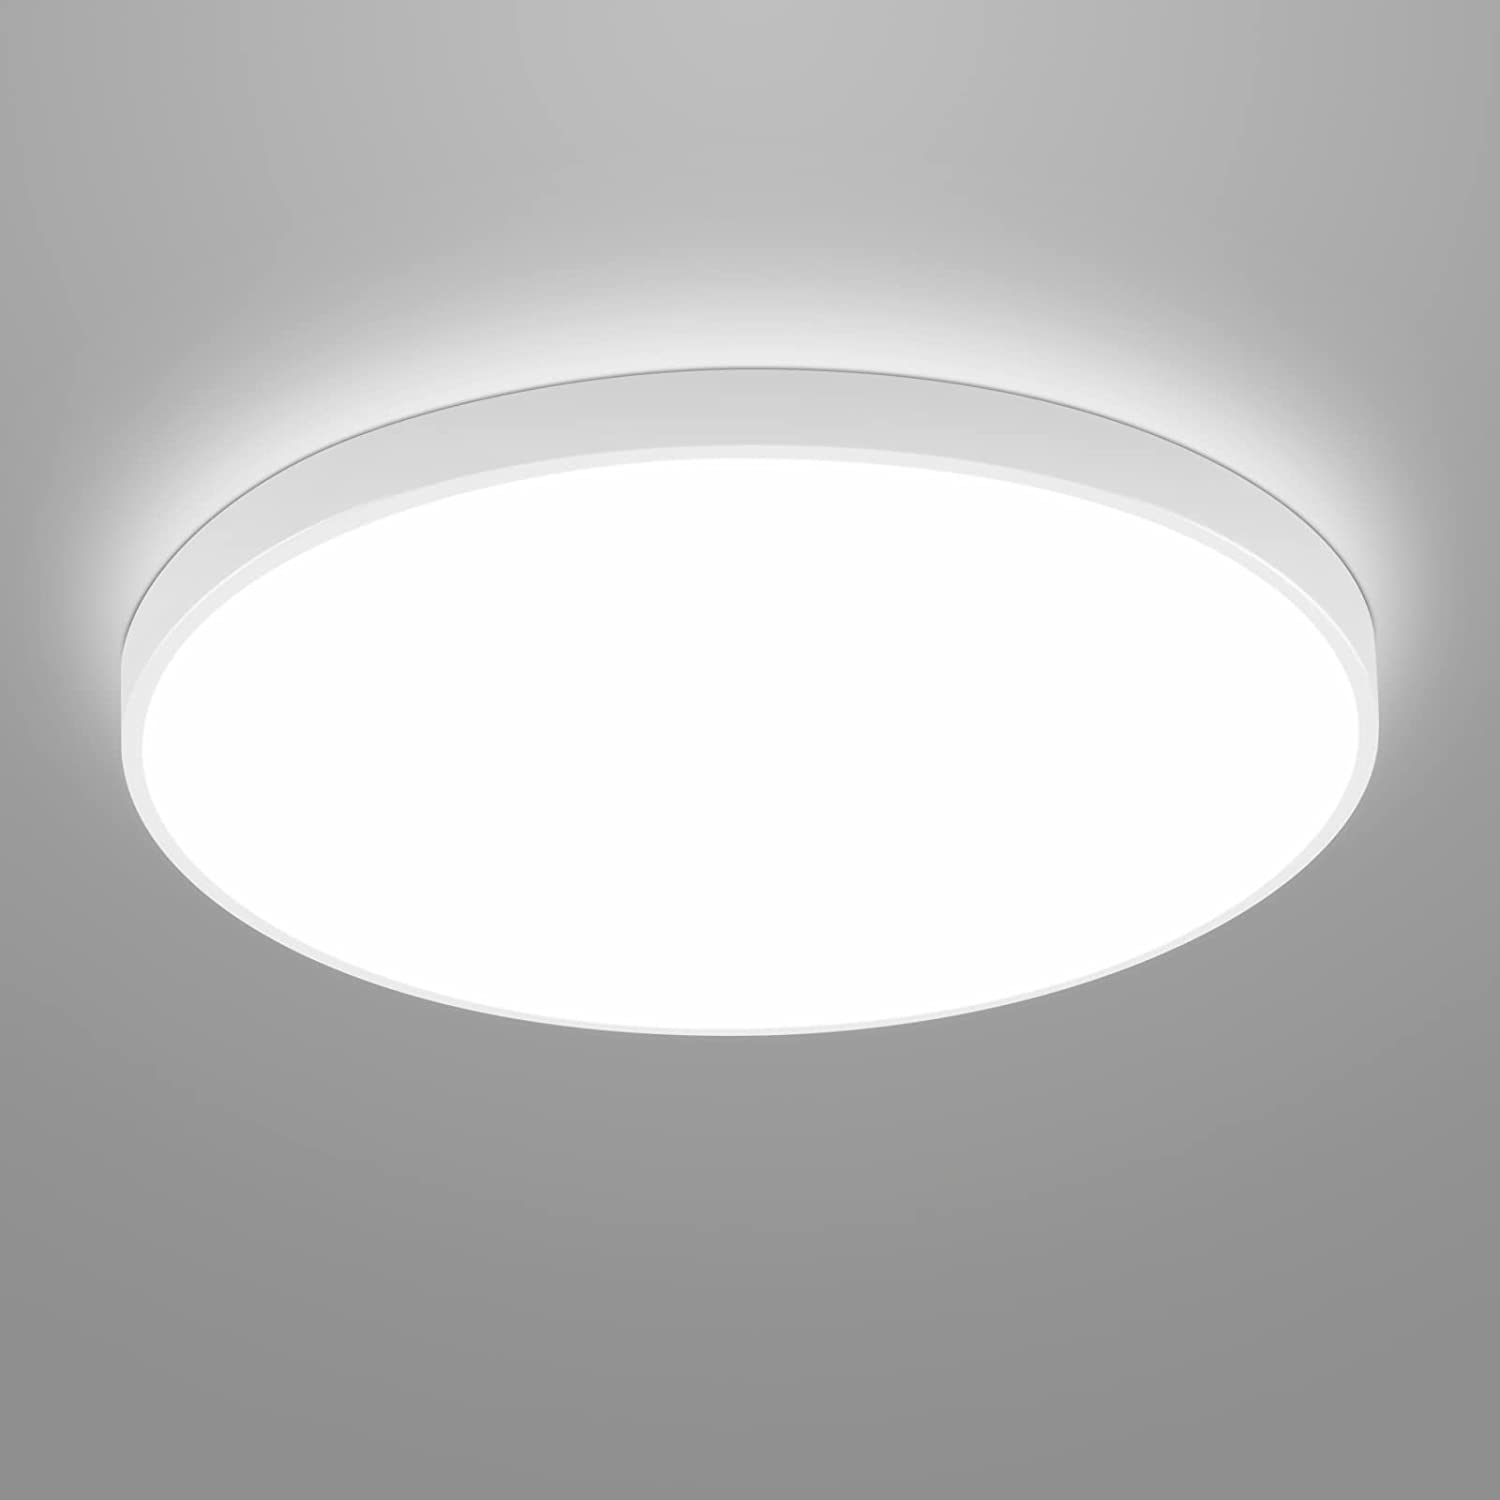 Plafonnier LED Rond, Lampe de Plafond pour Salle de Bain , IP54 Imperméable  6500K Blanc Froid, Luminaire Plafonnier Moderne pour Salle de Bain Chambre